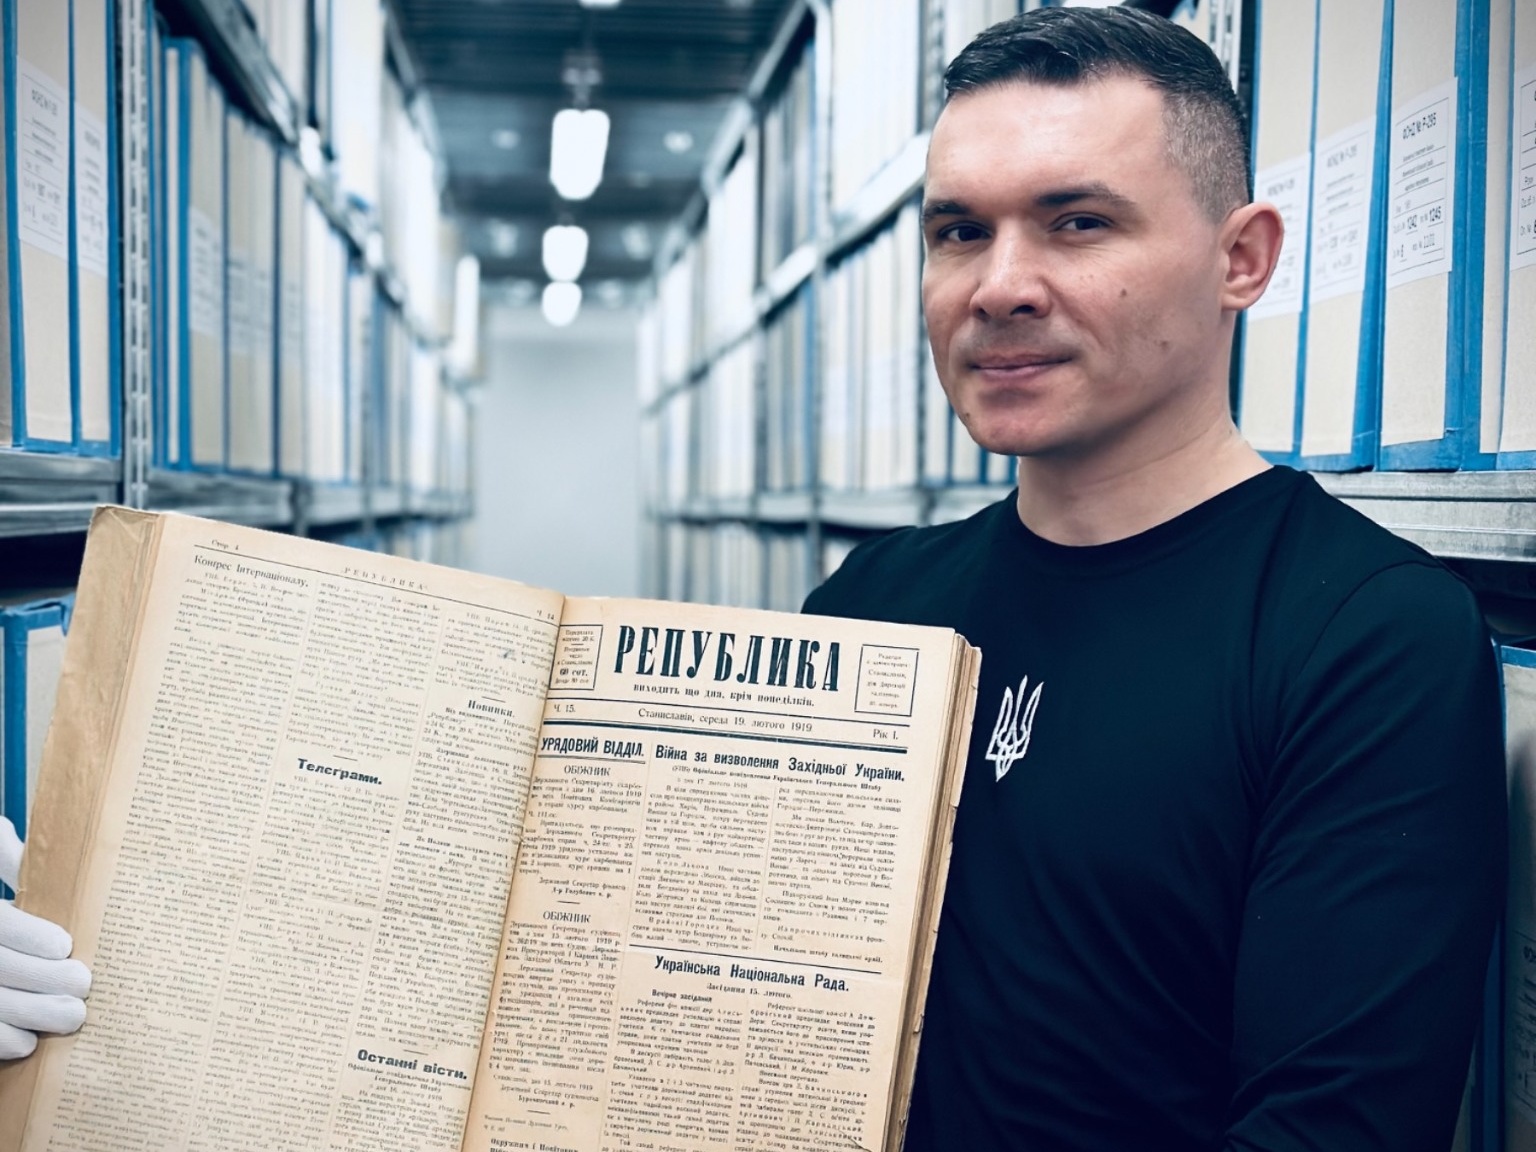 Навіщо архів Івано-Франківщини оцифровує старі газети